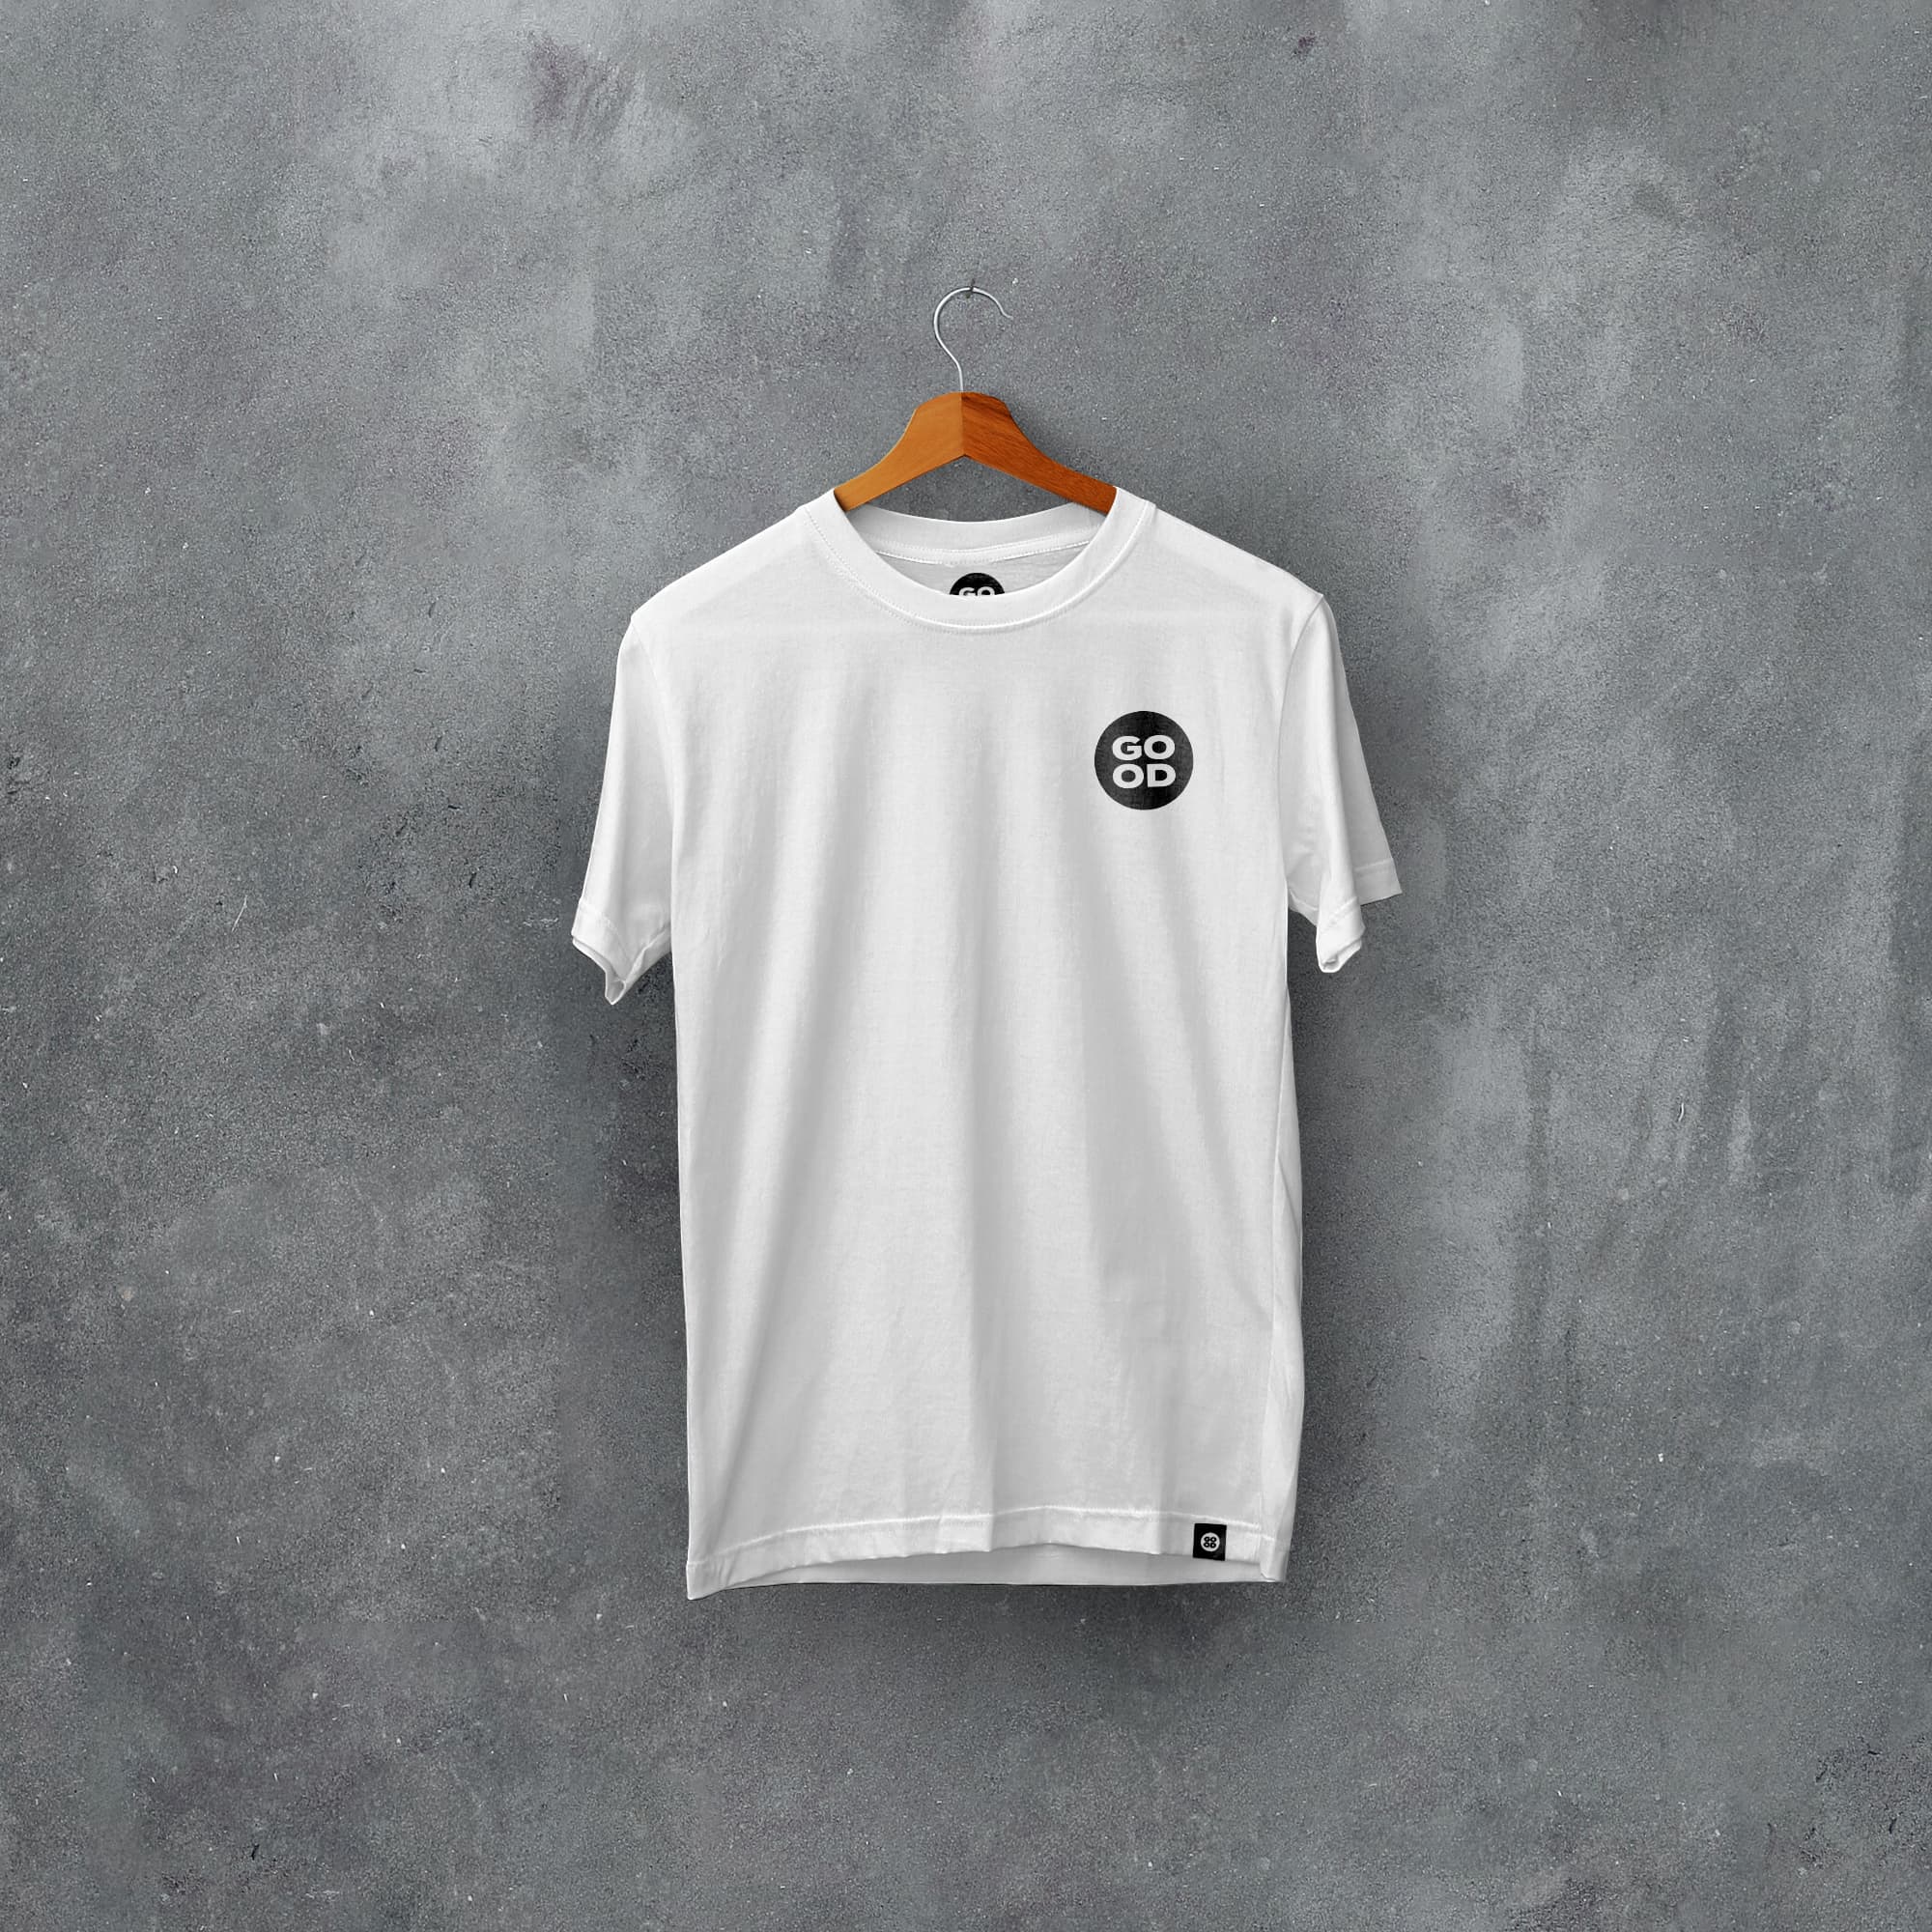 Italy Classic Kits Football T-Shirt